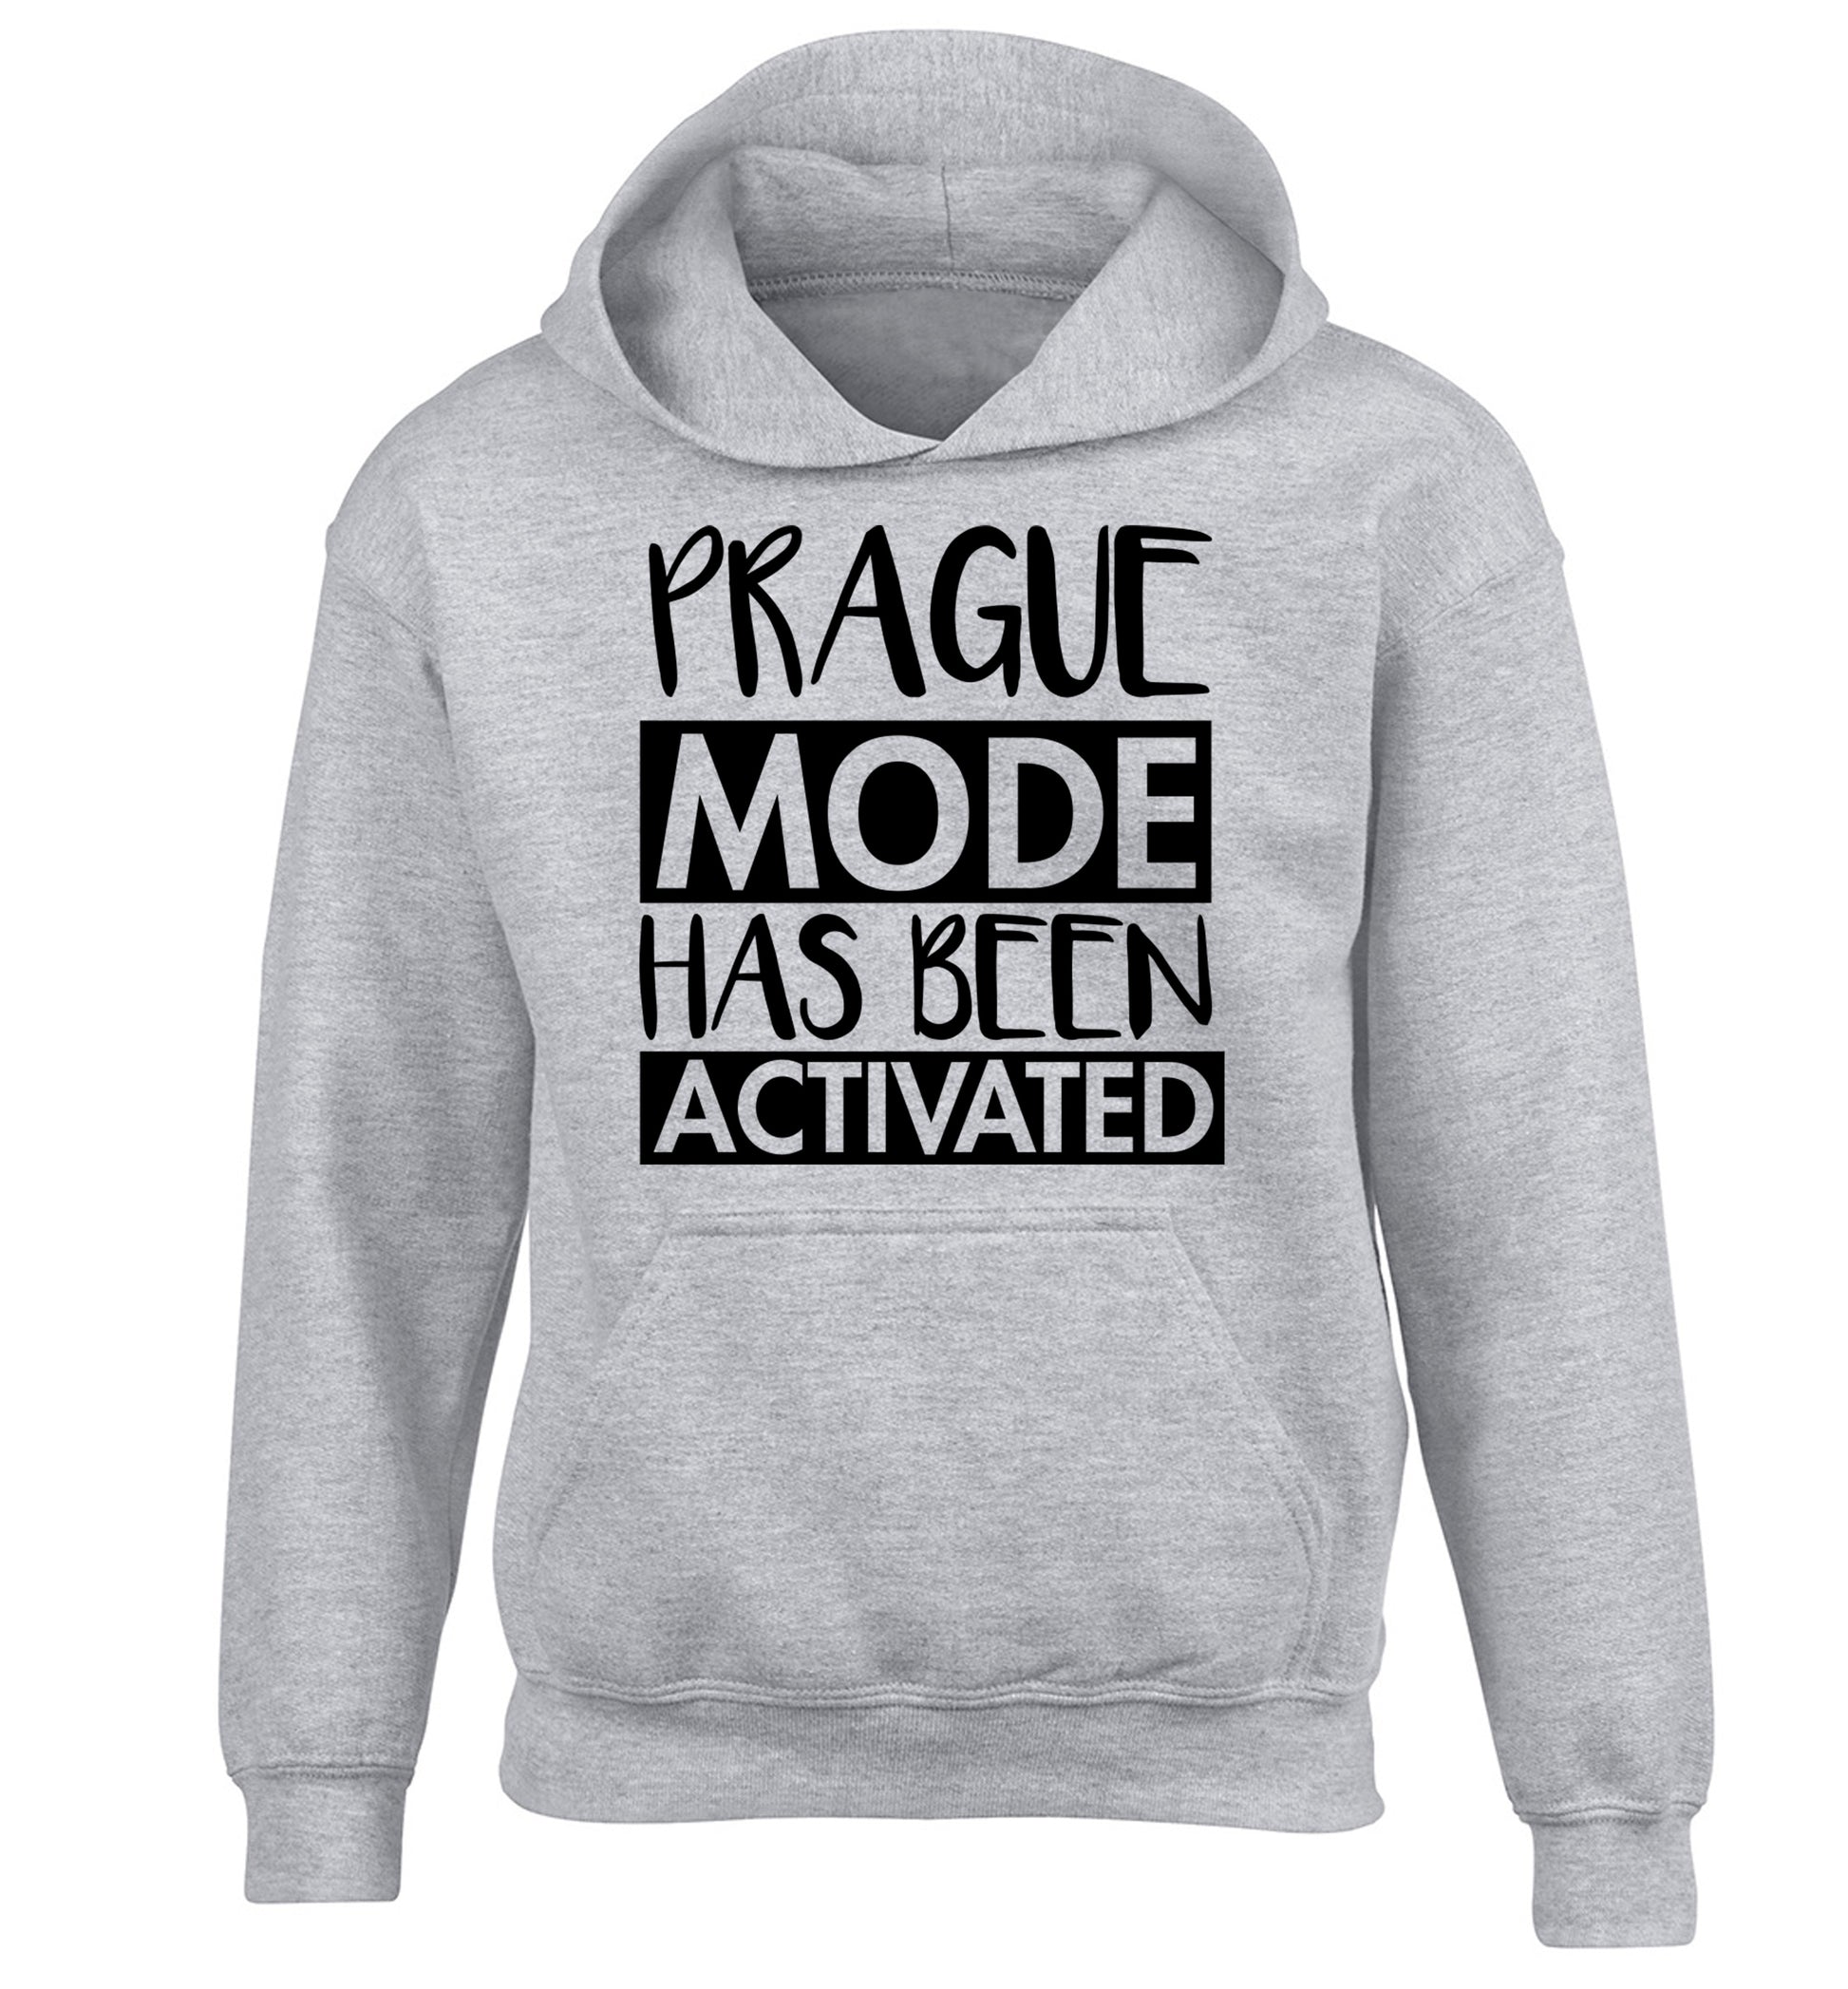 Prague mode has been activated children's grey hoodie 12-13 Years